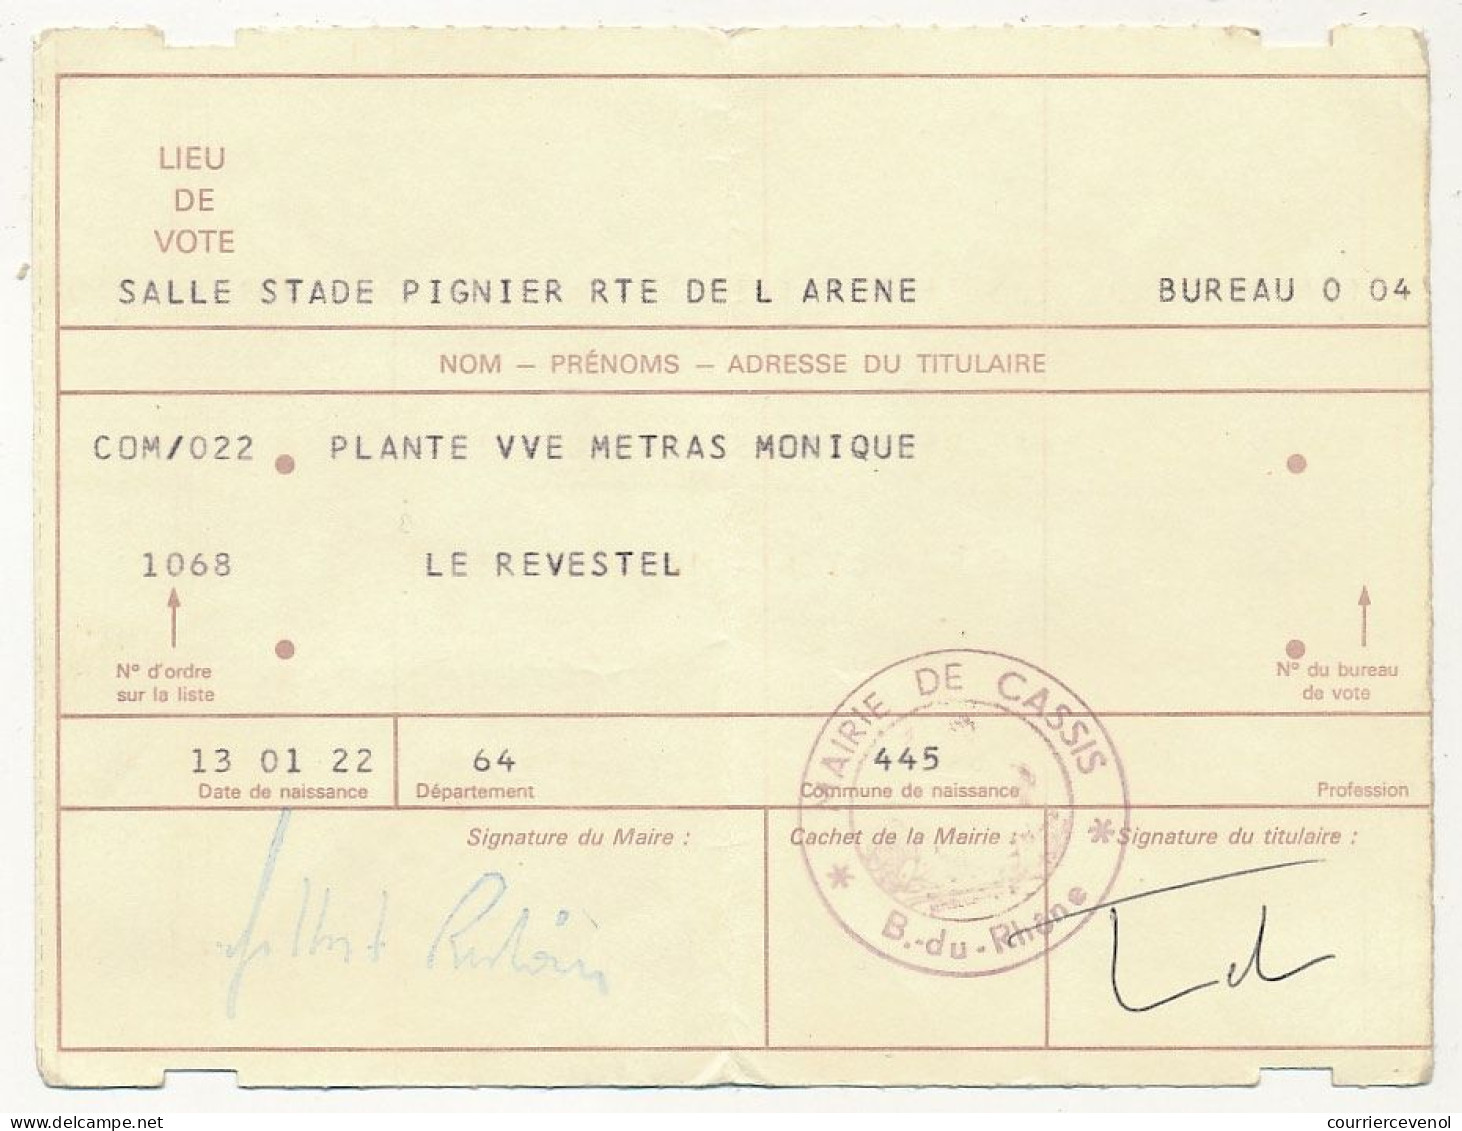 FRANCE - Carte D'électeur X2 1985/1986 - Mairie De Cassis (B Du R) Et Mairie D'Aix En Provence (B Du R) - Documents Historiques